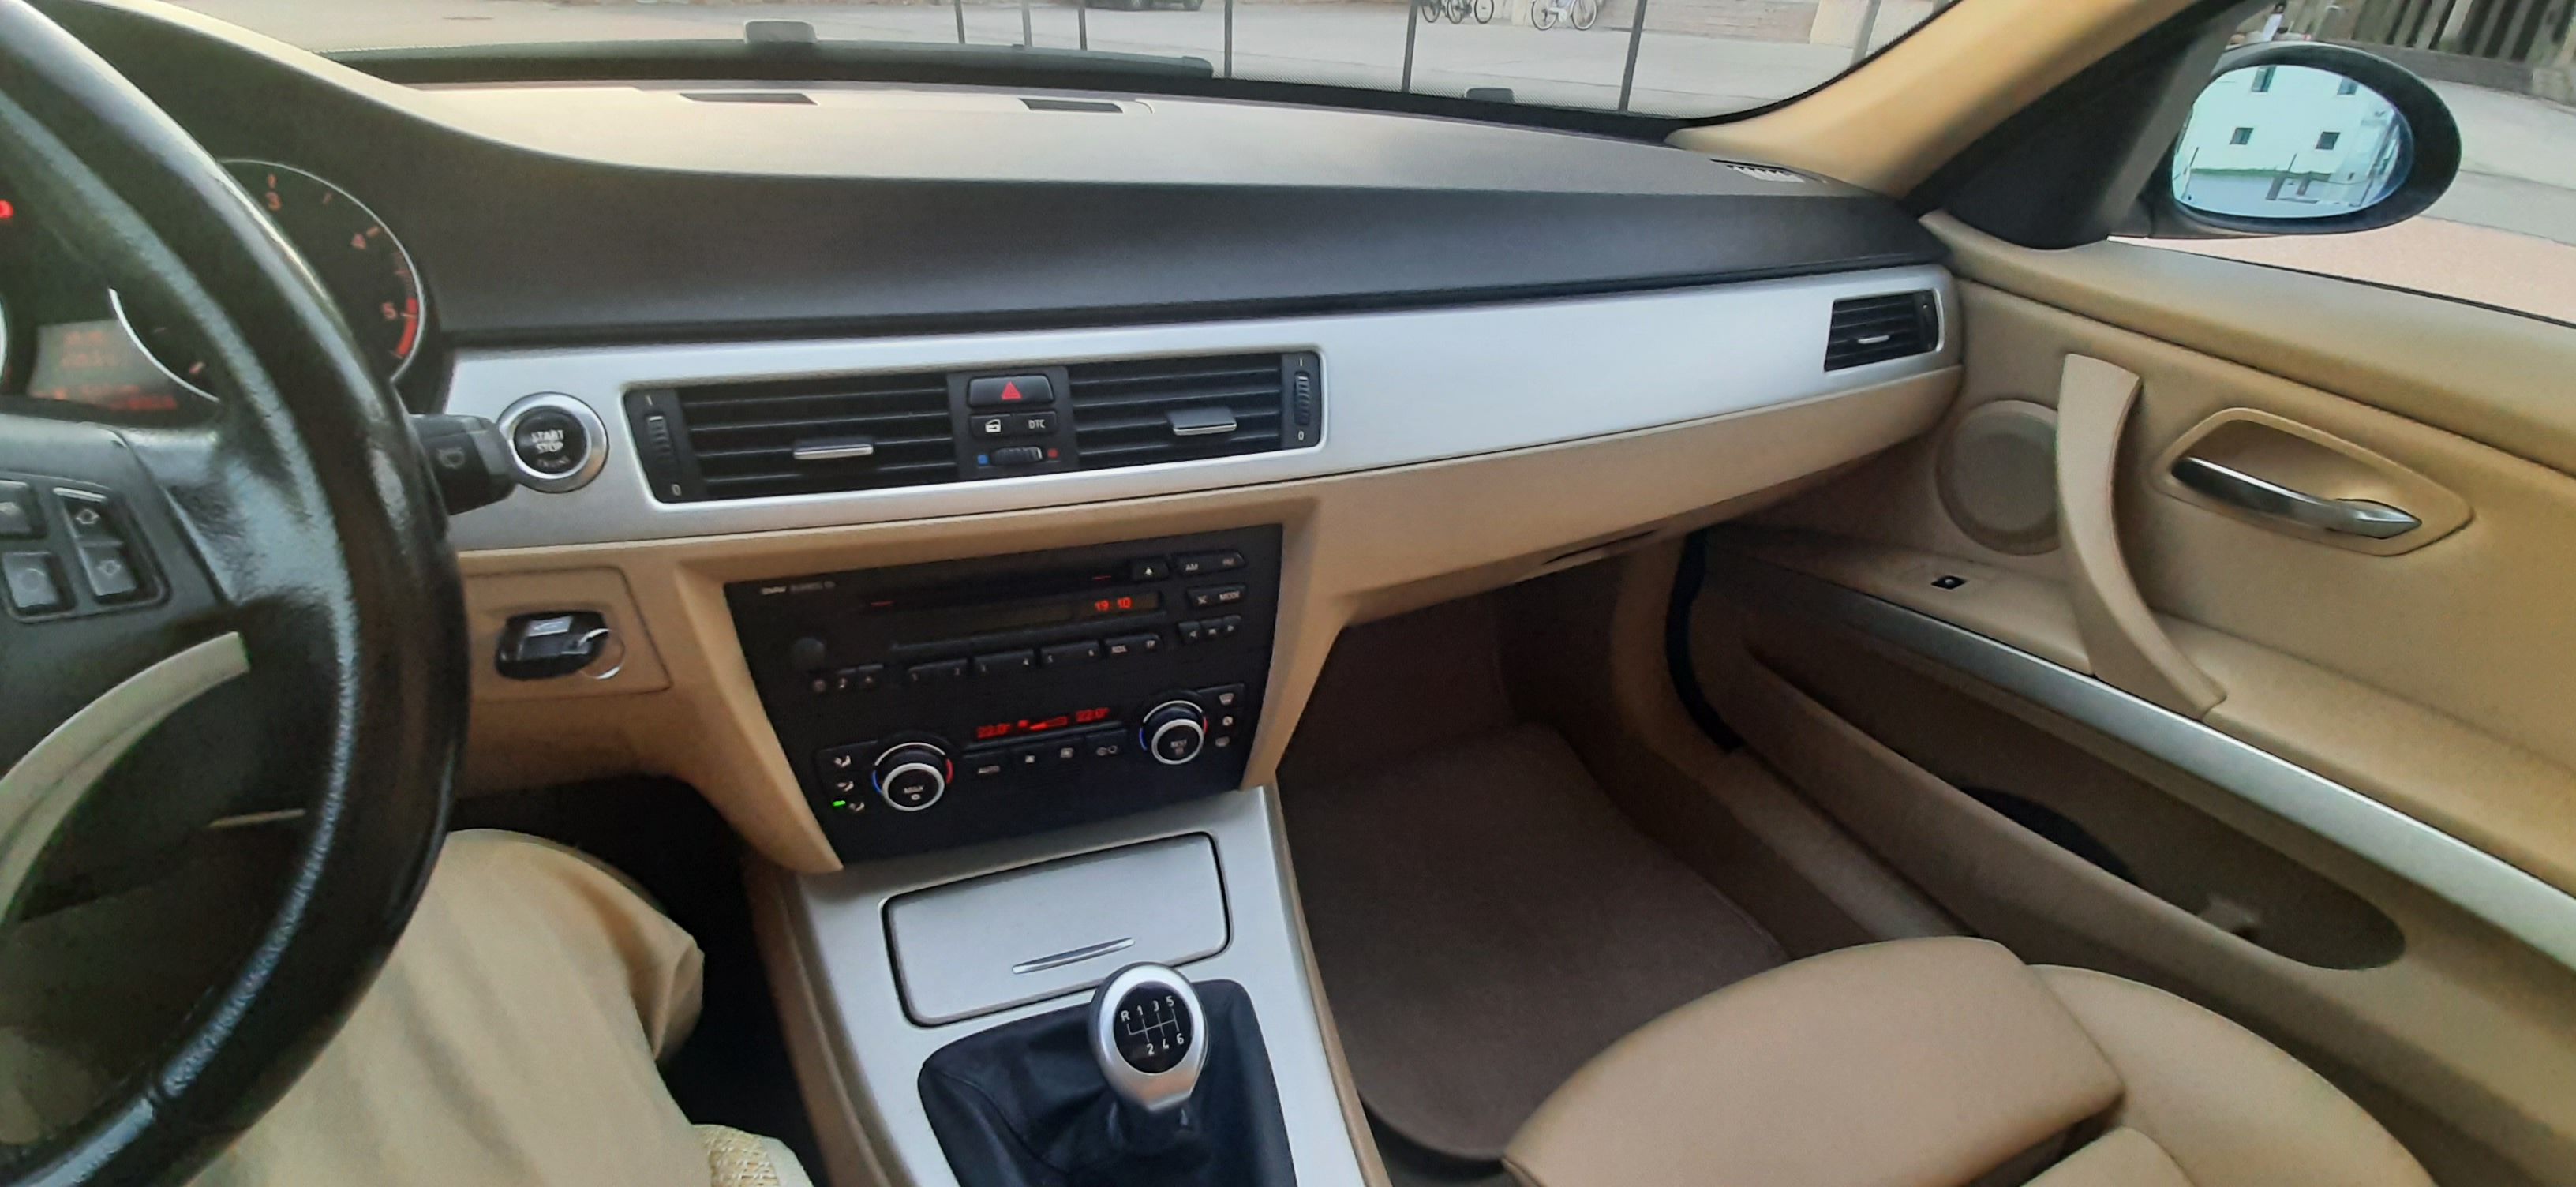 BMW SERIE 3 E91 TOURING 320d 163CV Colore nero 